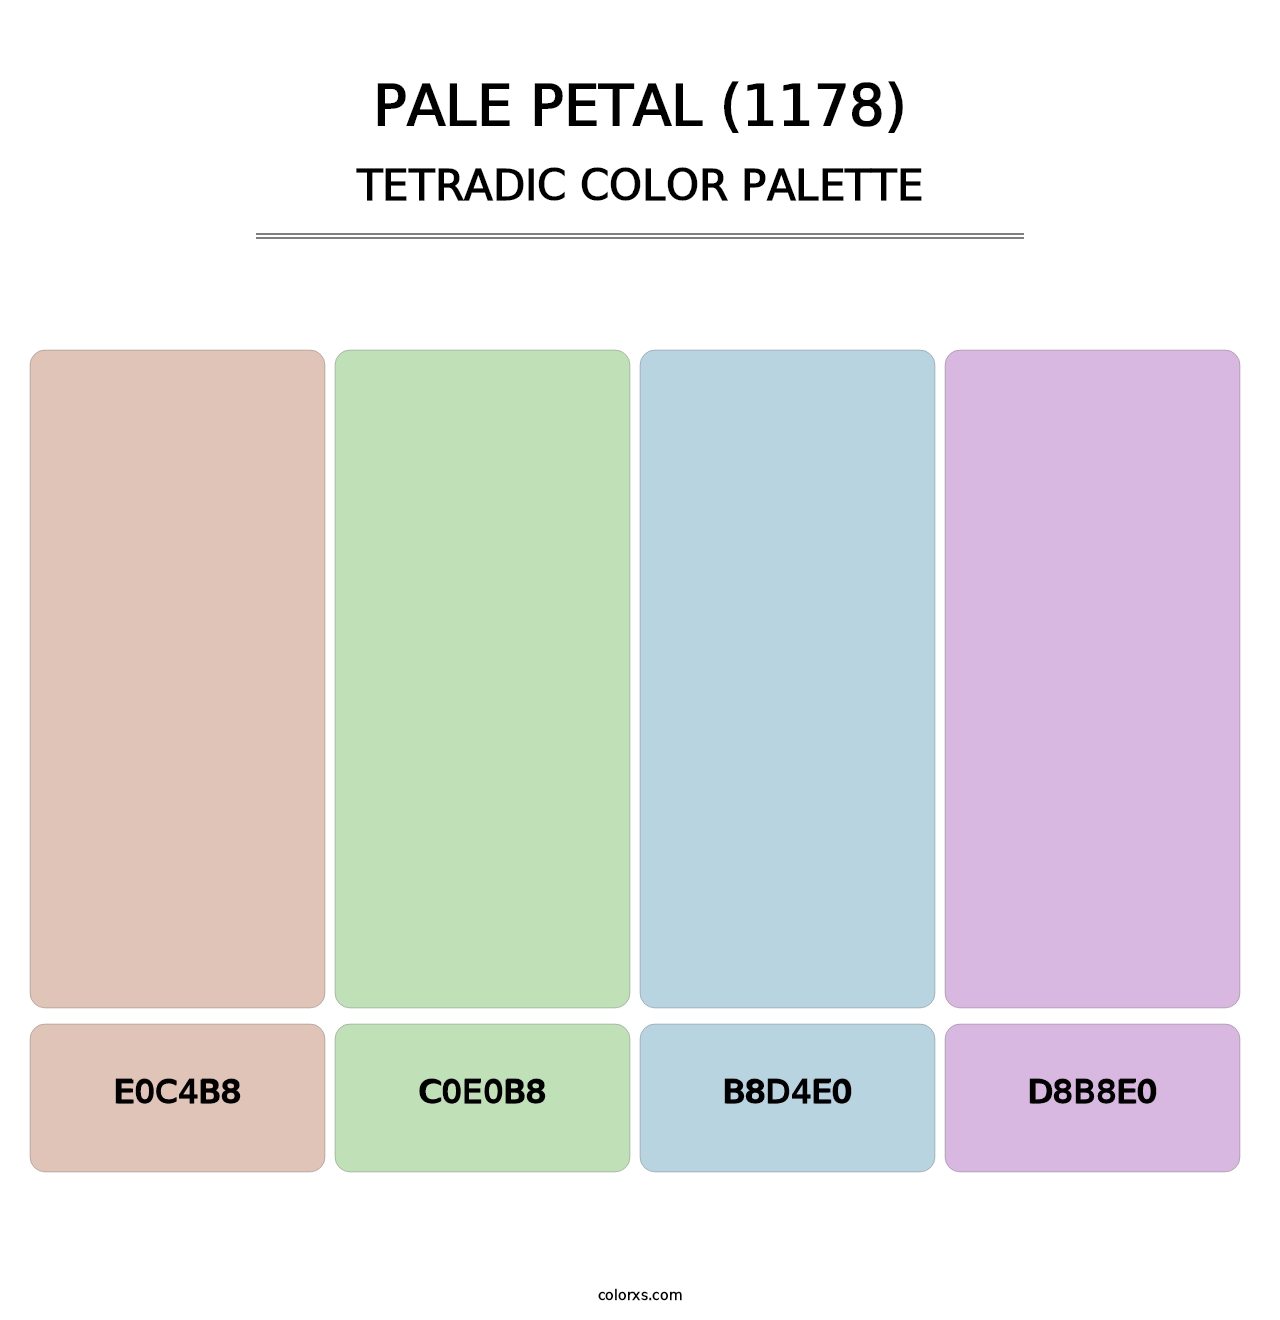 Pale Petal (1178) - Tetradic Color Palette